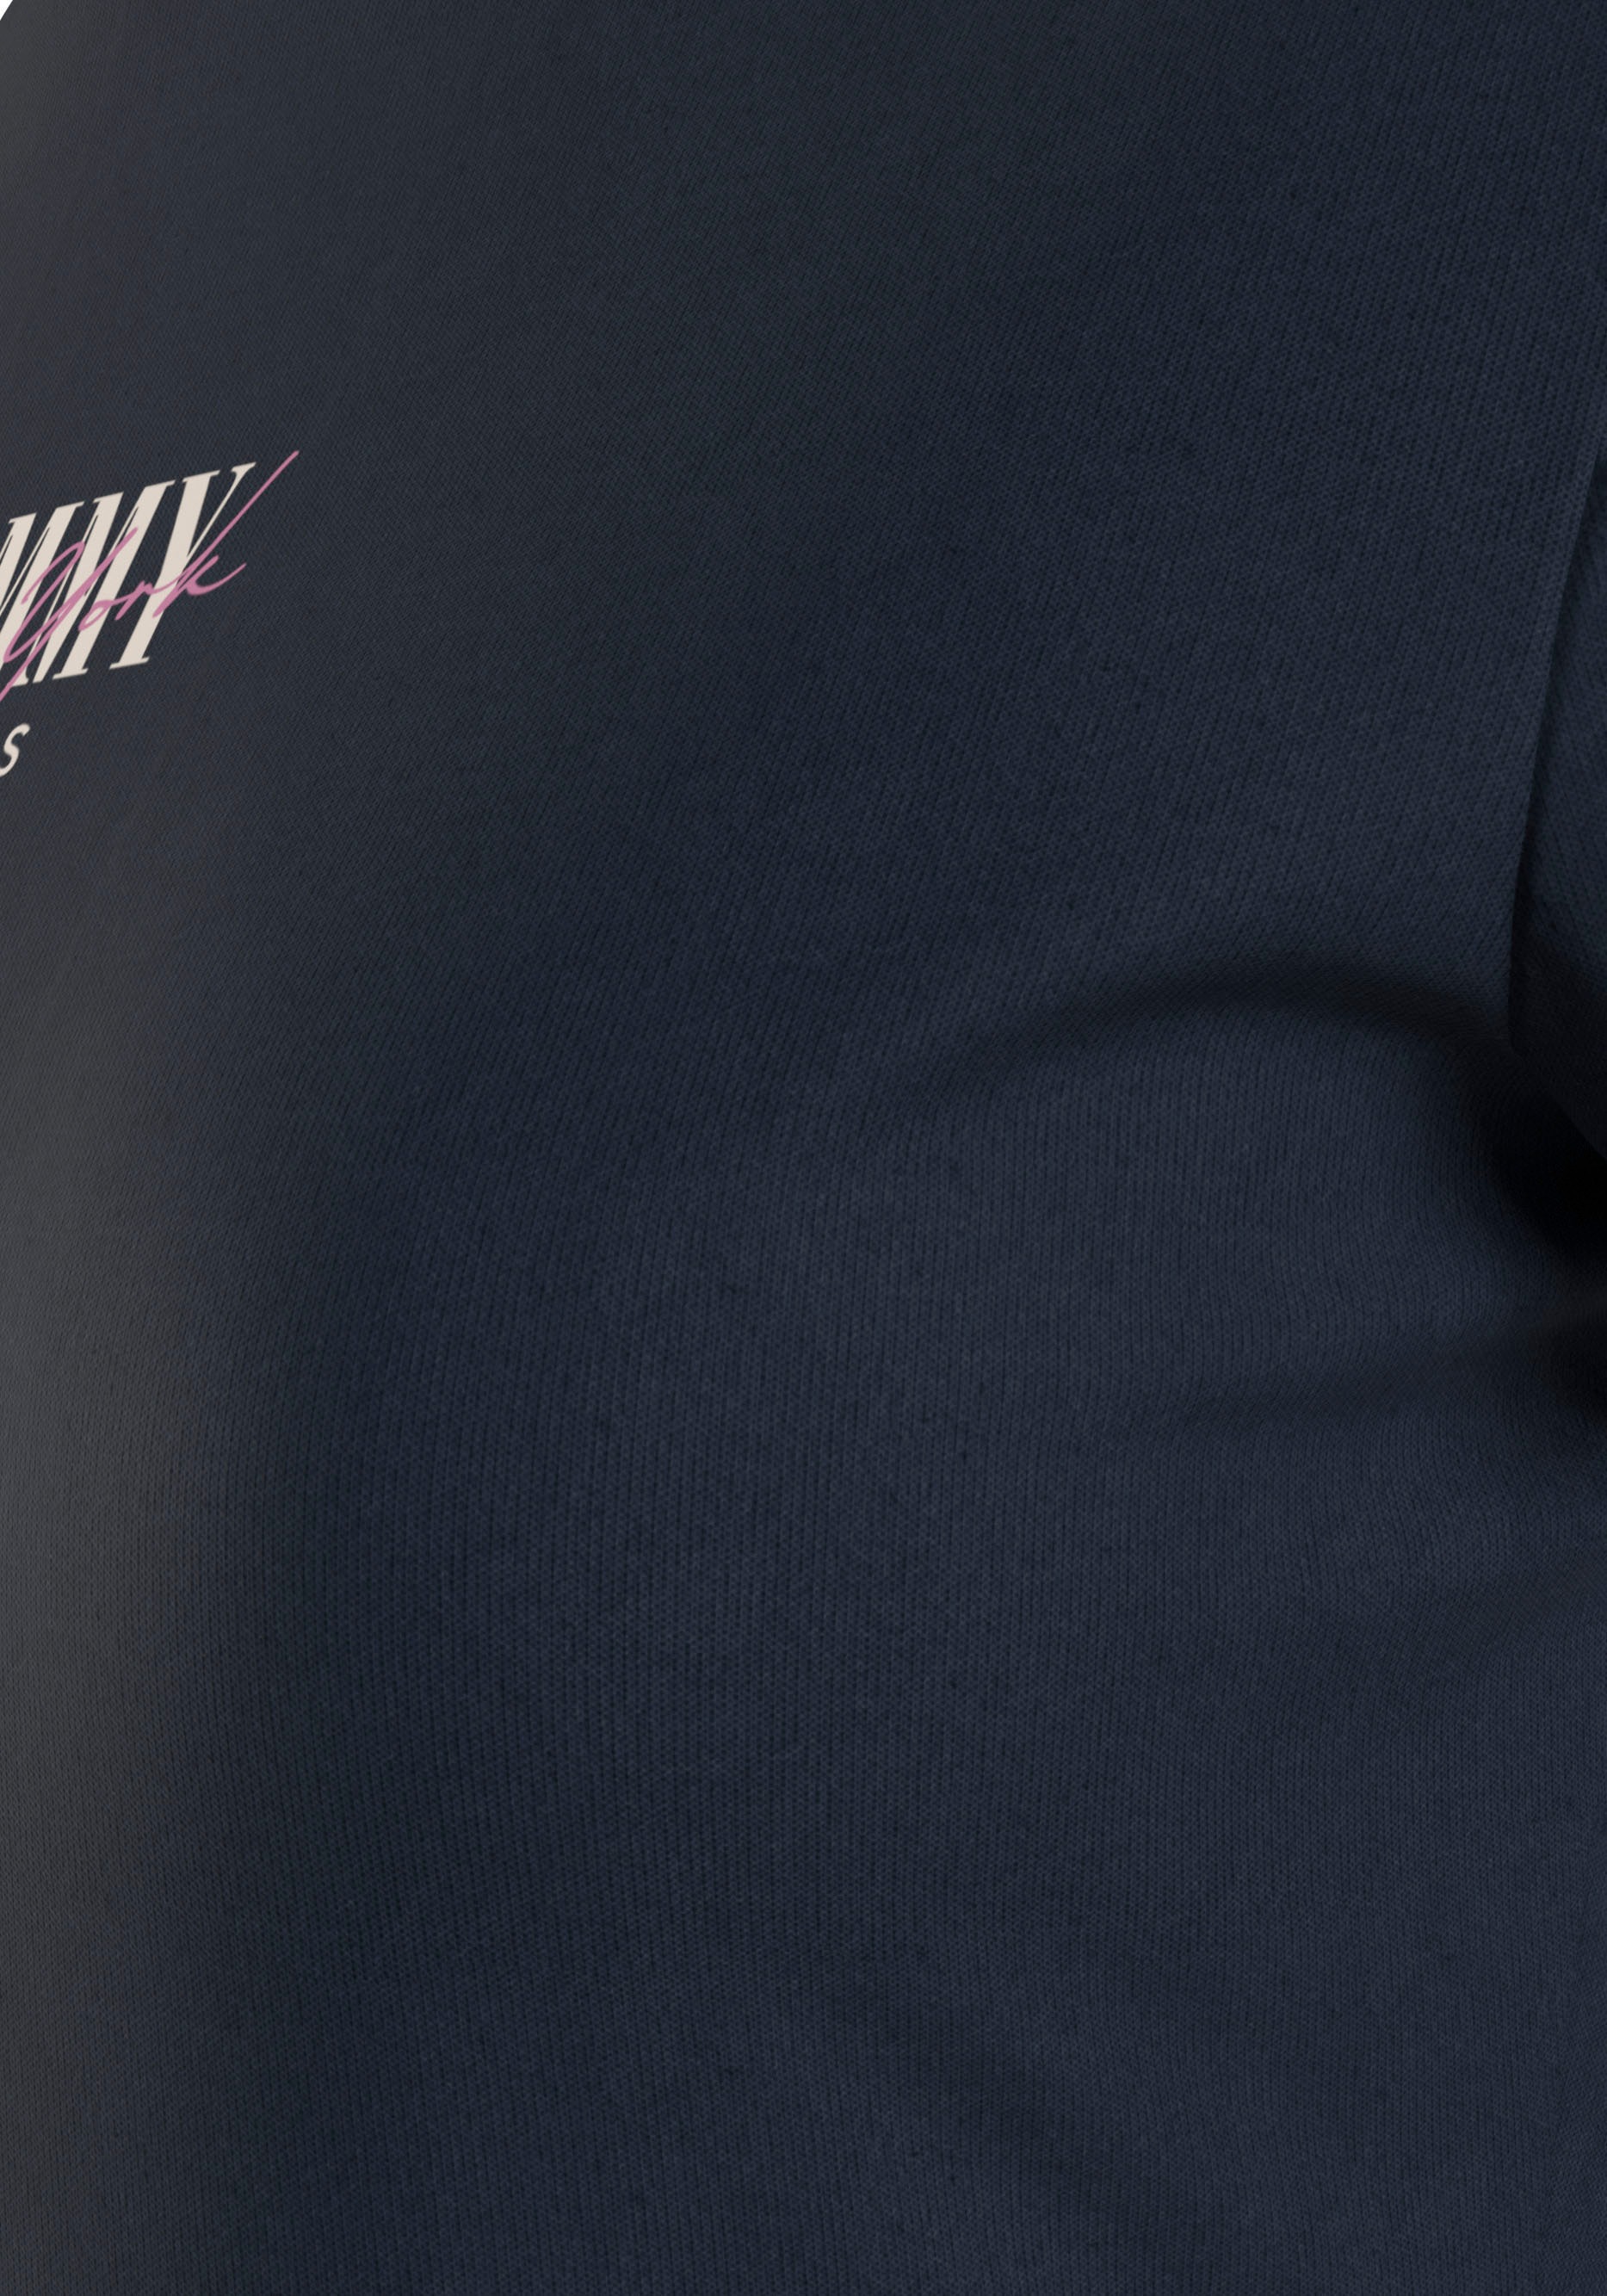 Tommy Jeans Rundhalsshirt »Rib Slim Essential Logo«, Rippshirt, feines Jersey Rippe, elastisch mit Tommy Jeans Logo